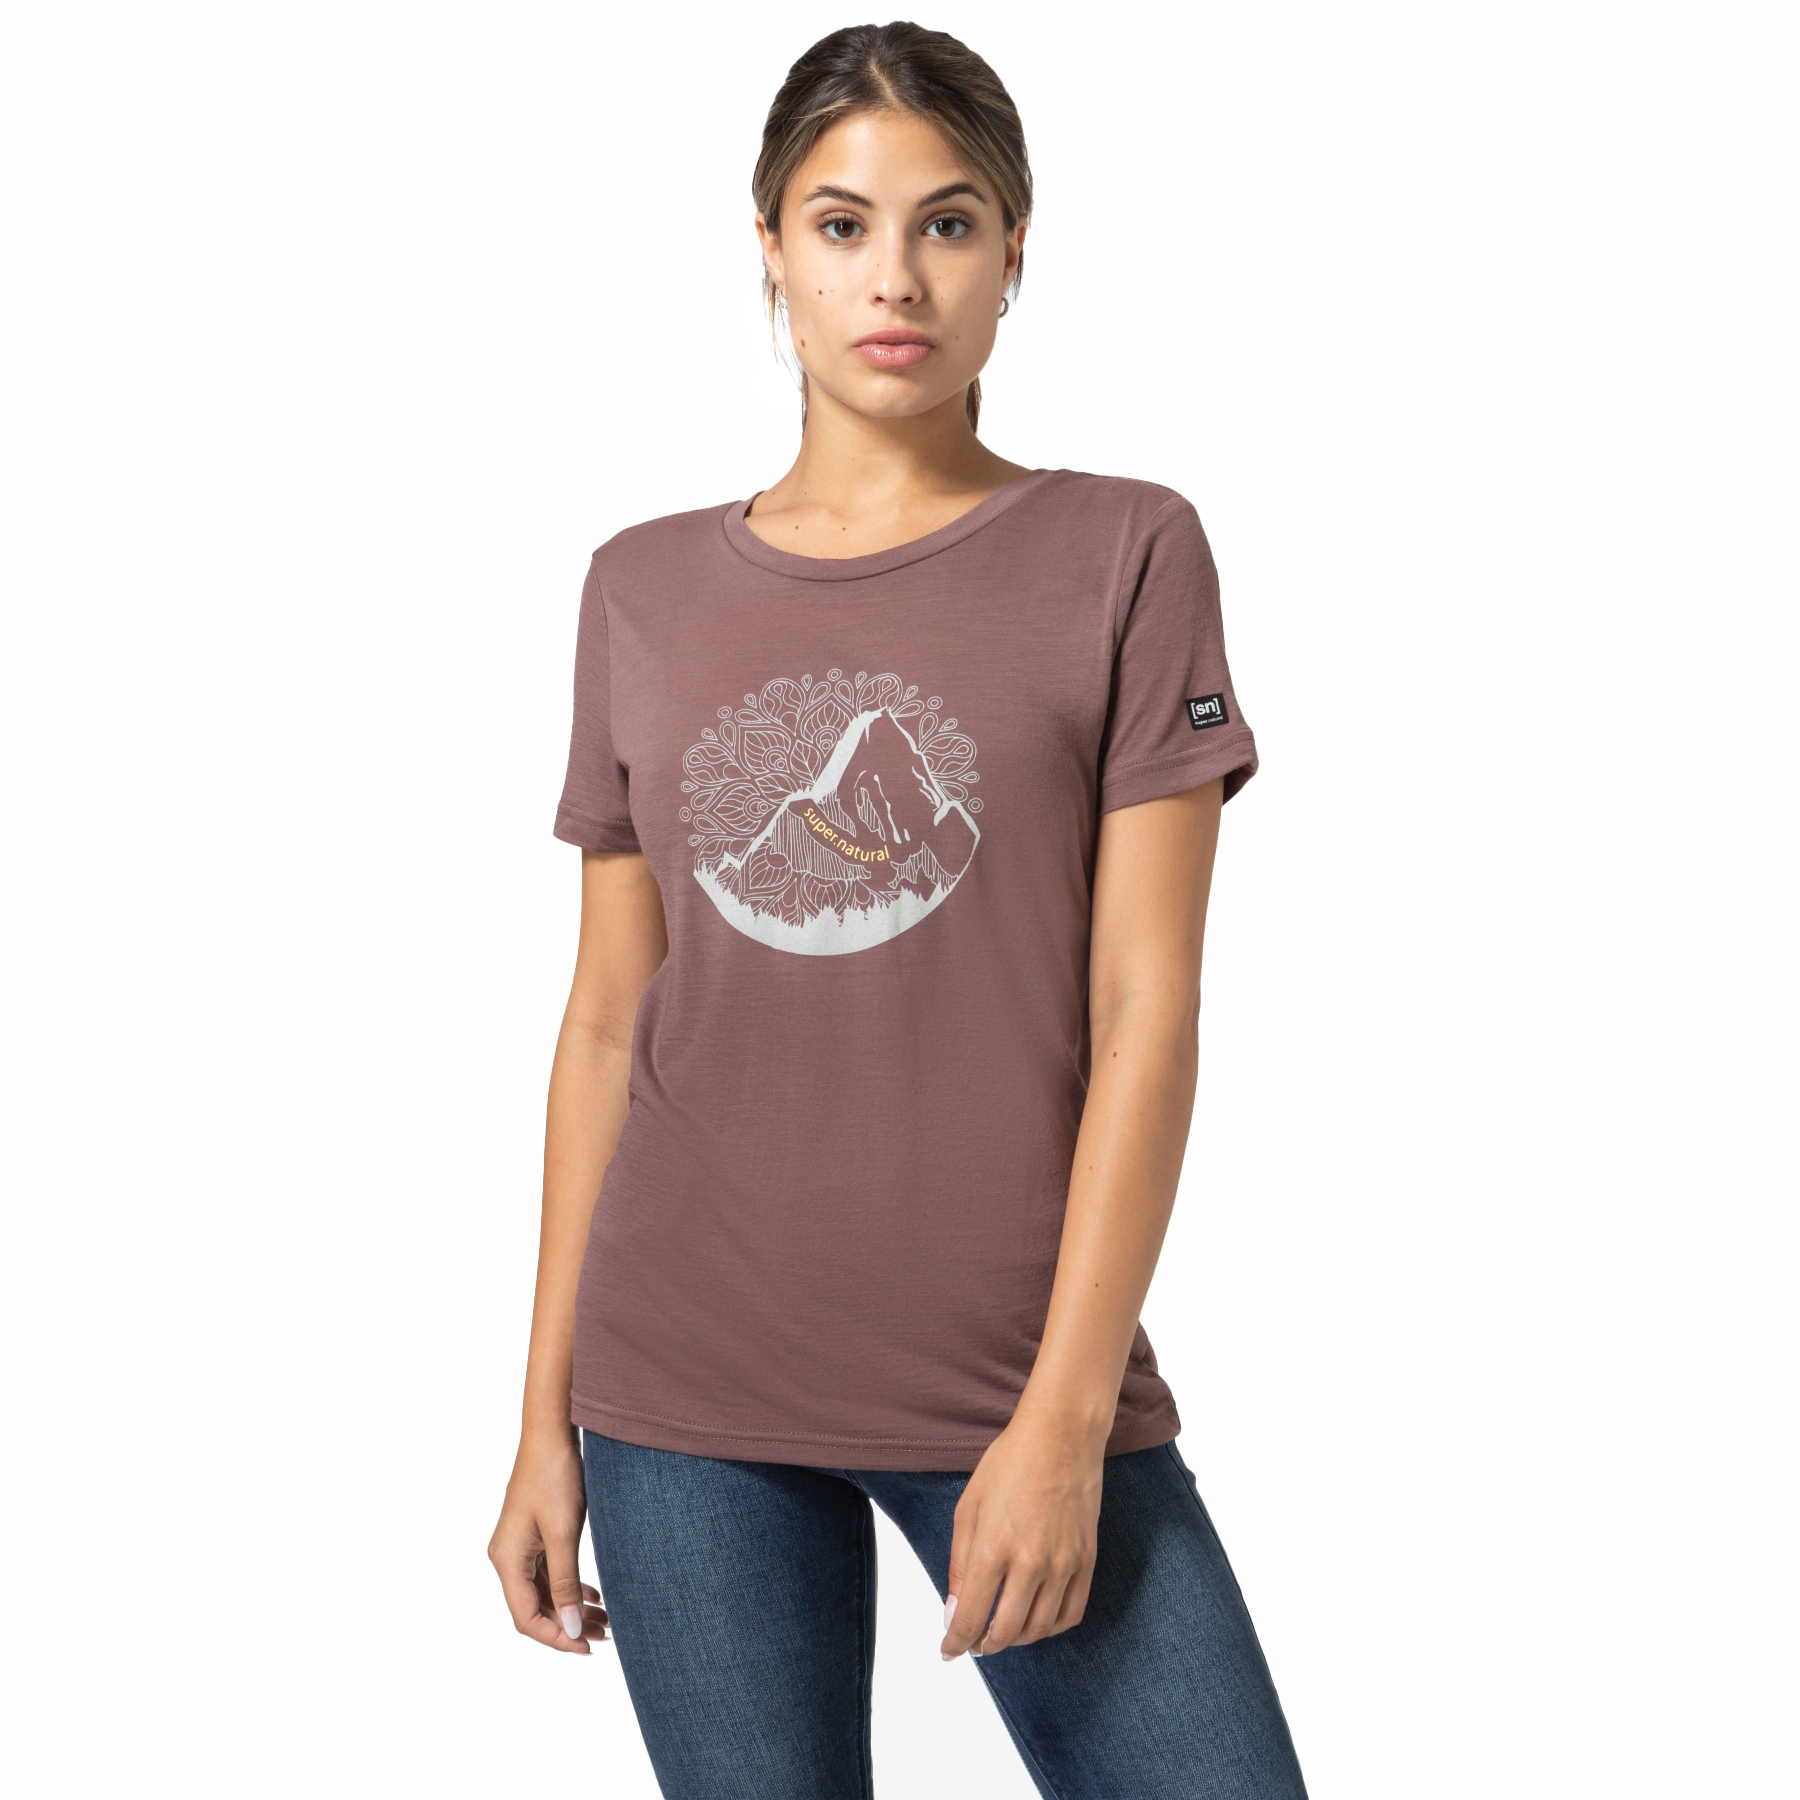 Produktbild von SUPER.NATURAL Mountain Mandala Tree T-Shirt Damen - Peppercorn/Feather Grey/Gold